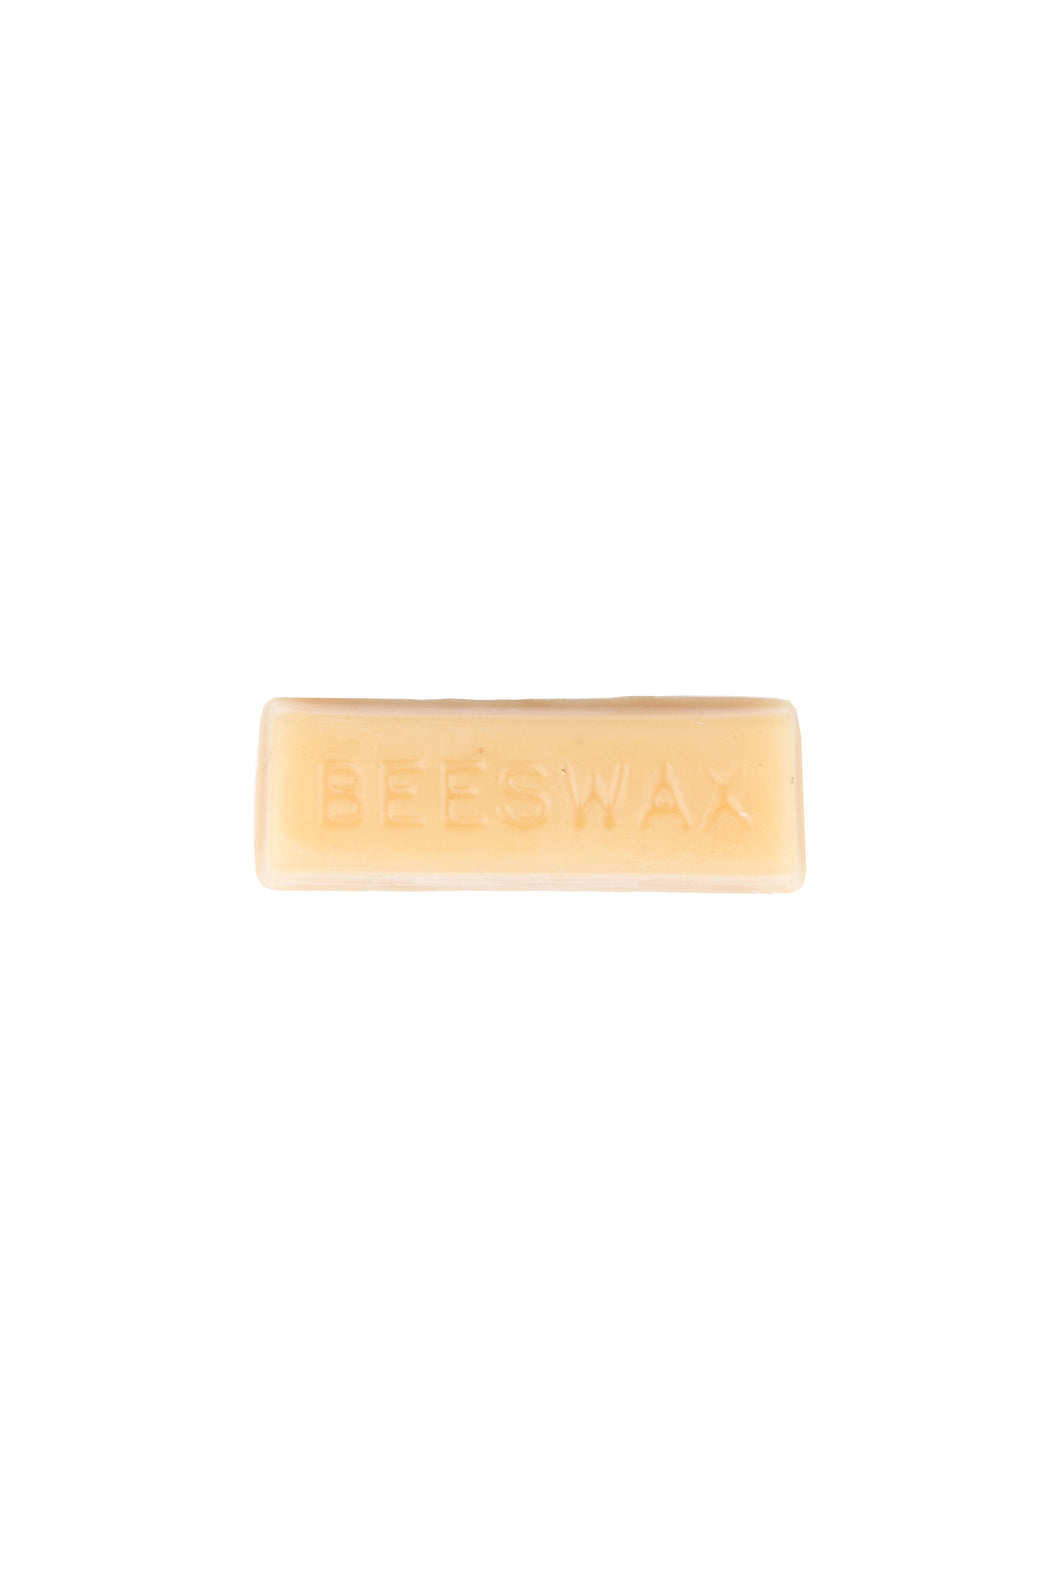 Beeswax Block- .89 oz